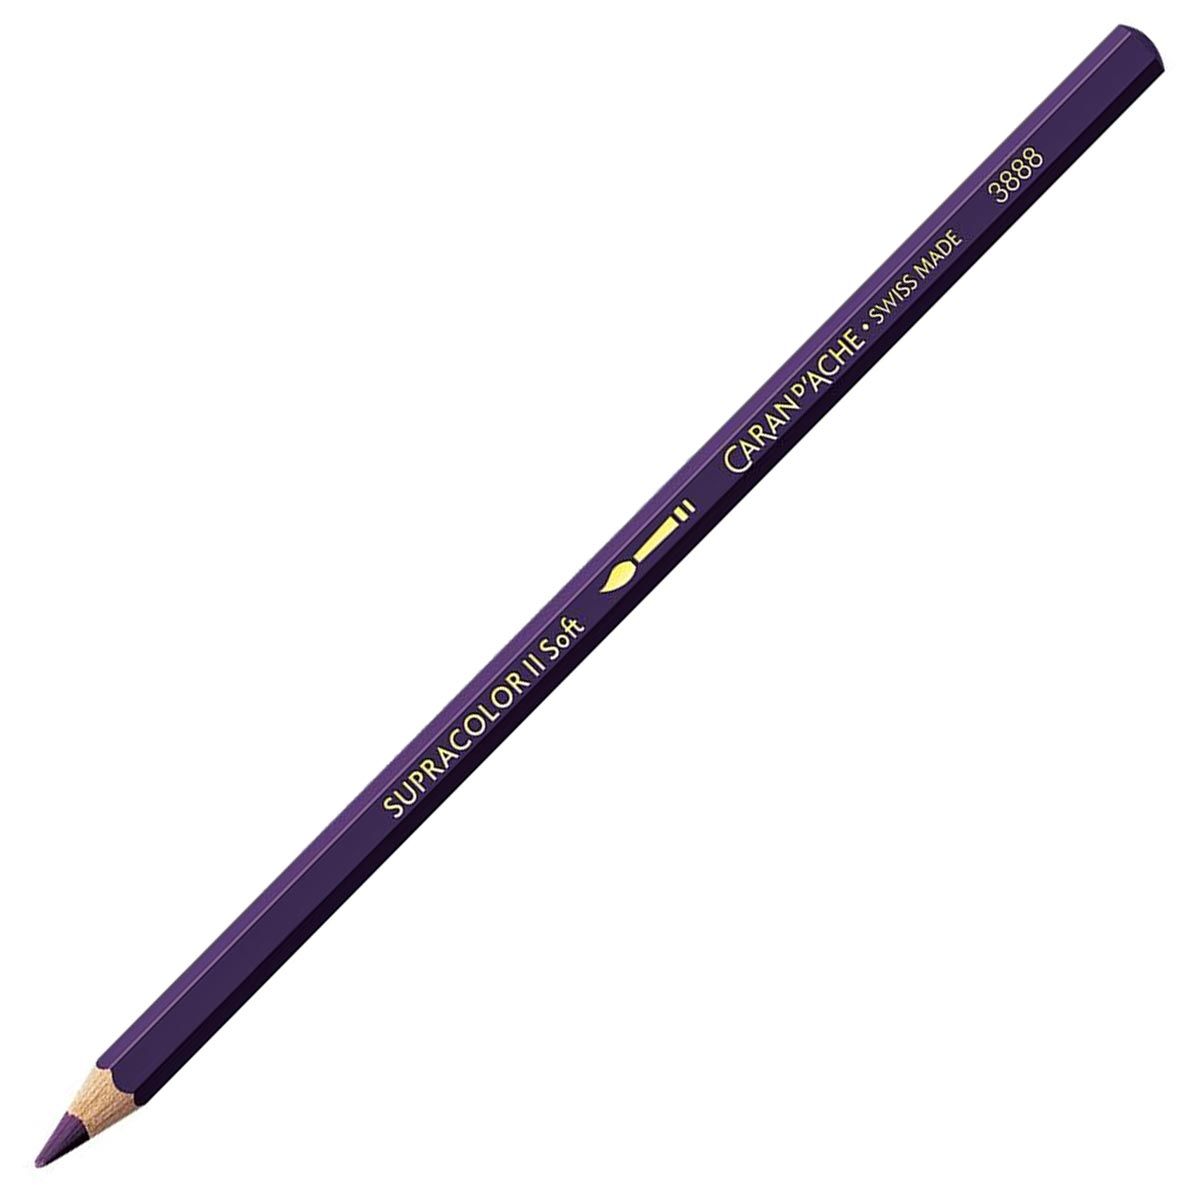 Caran d'Ache Supracolor ll Soft Aquarelle Pencil - Lilac 110